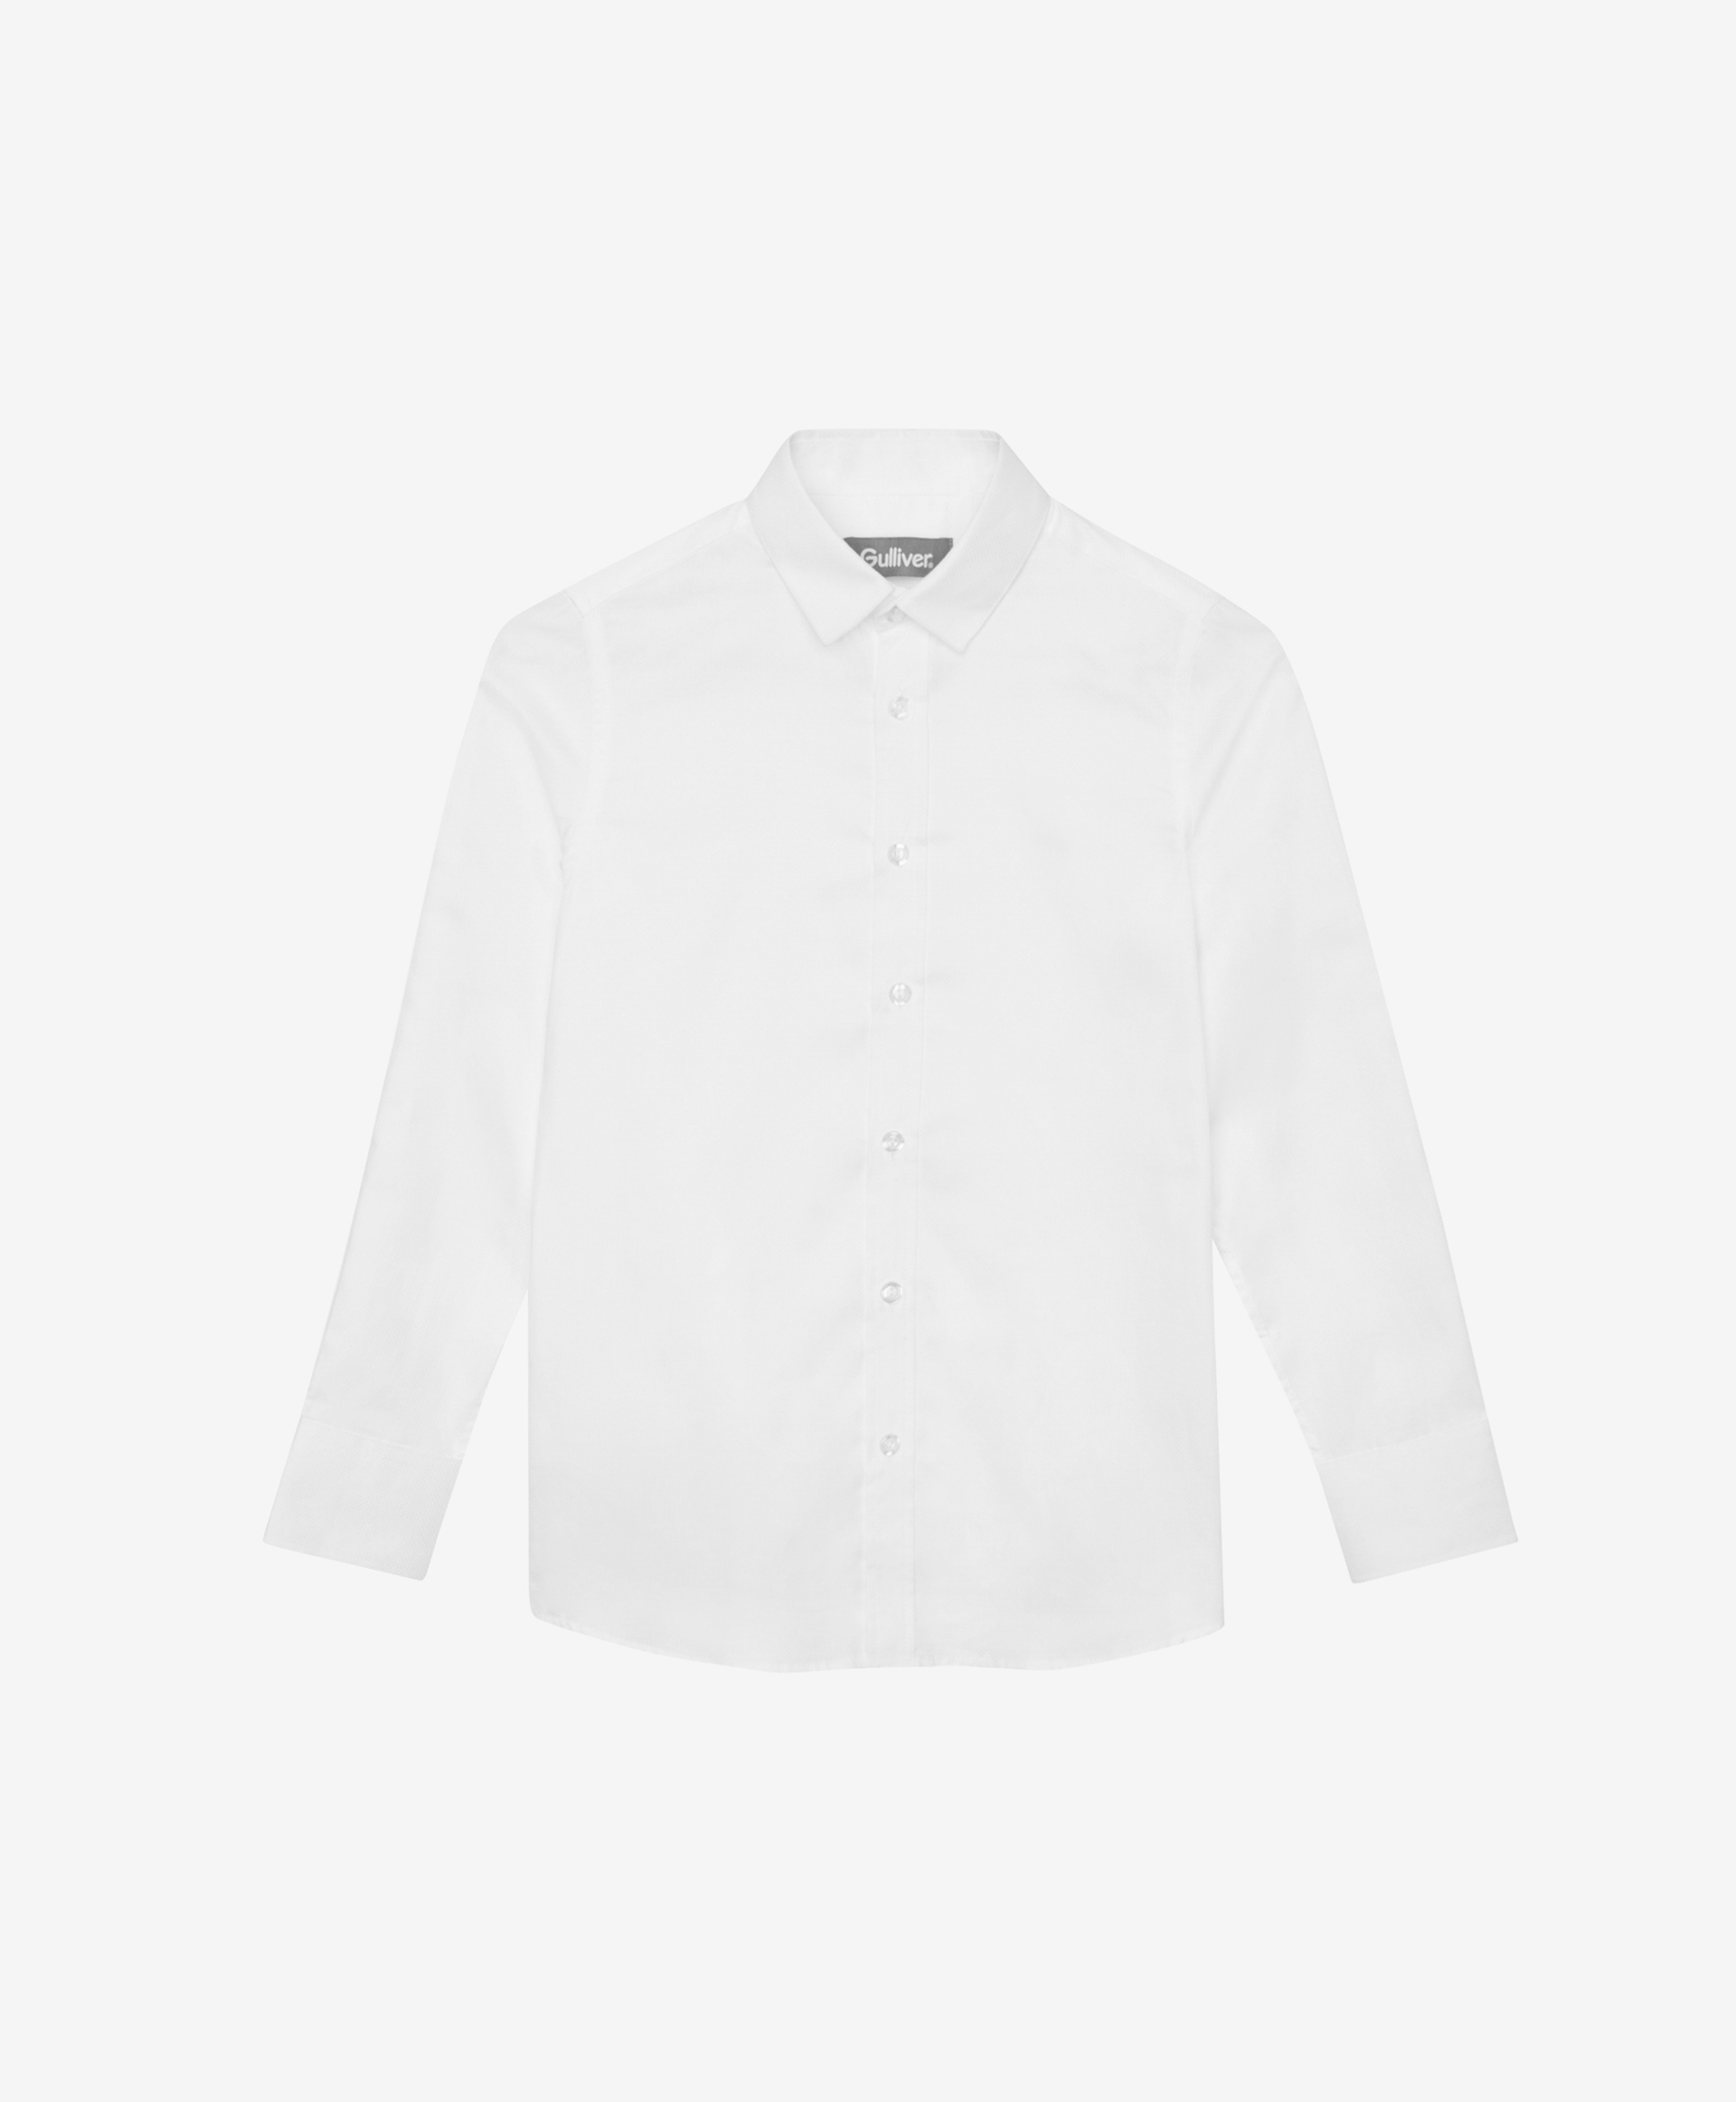 Сорочка белая с длинным рукавом Gulliver 200GSBC2302, размер 134*68*32, цвет белый - фото 3